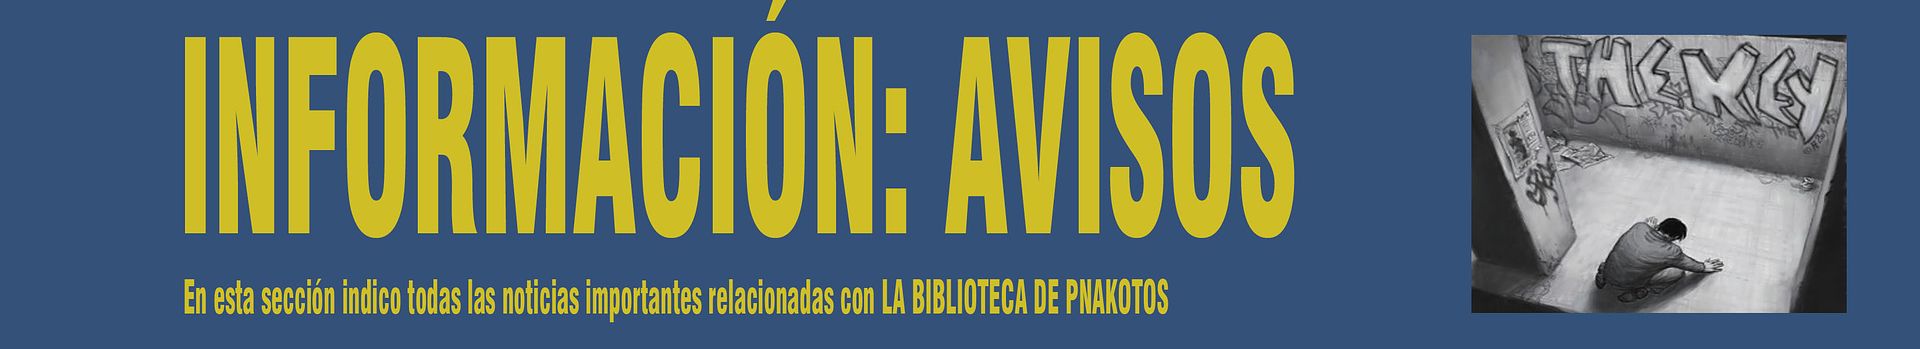 INFORMACIÓN: AVISOS. En esta sección indico todas las noticias importantes relacionadas con La Biblioteca de Pnakotos.